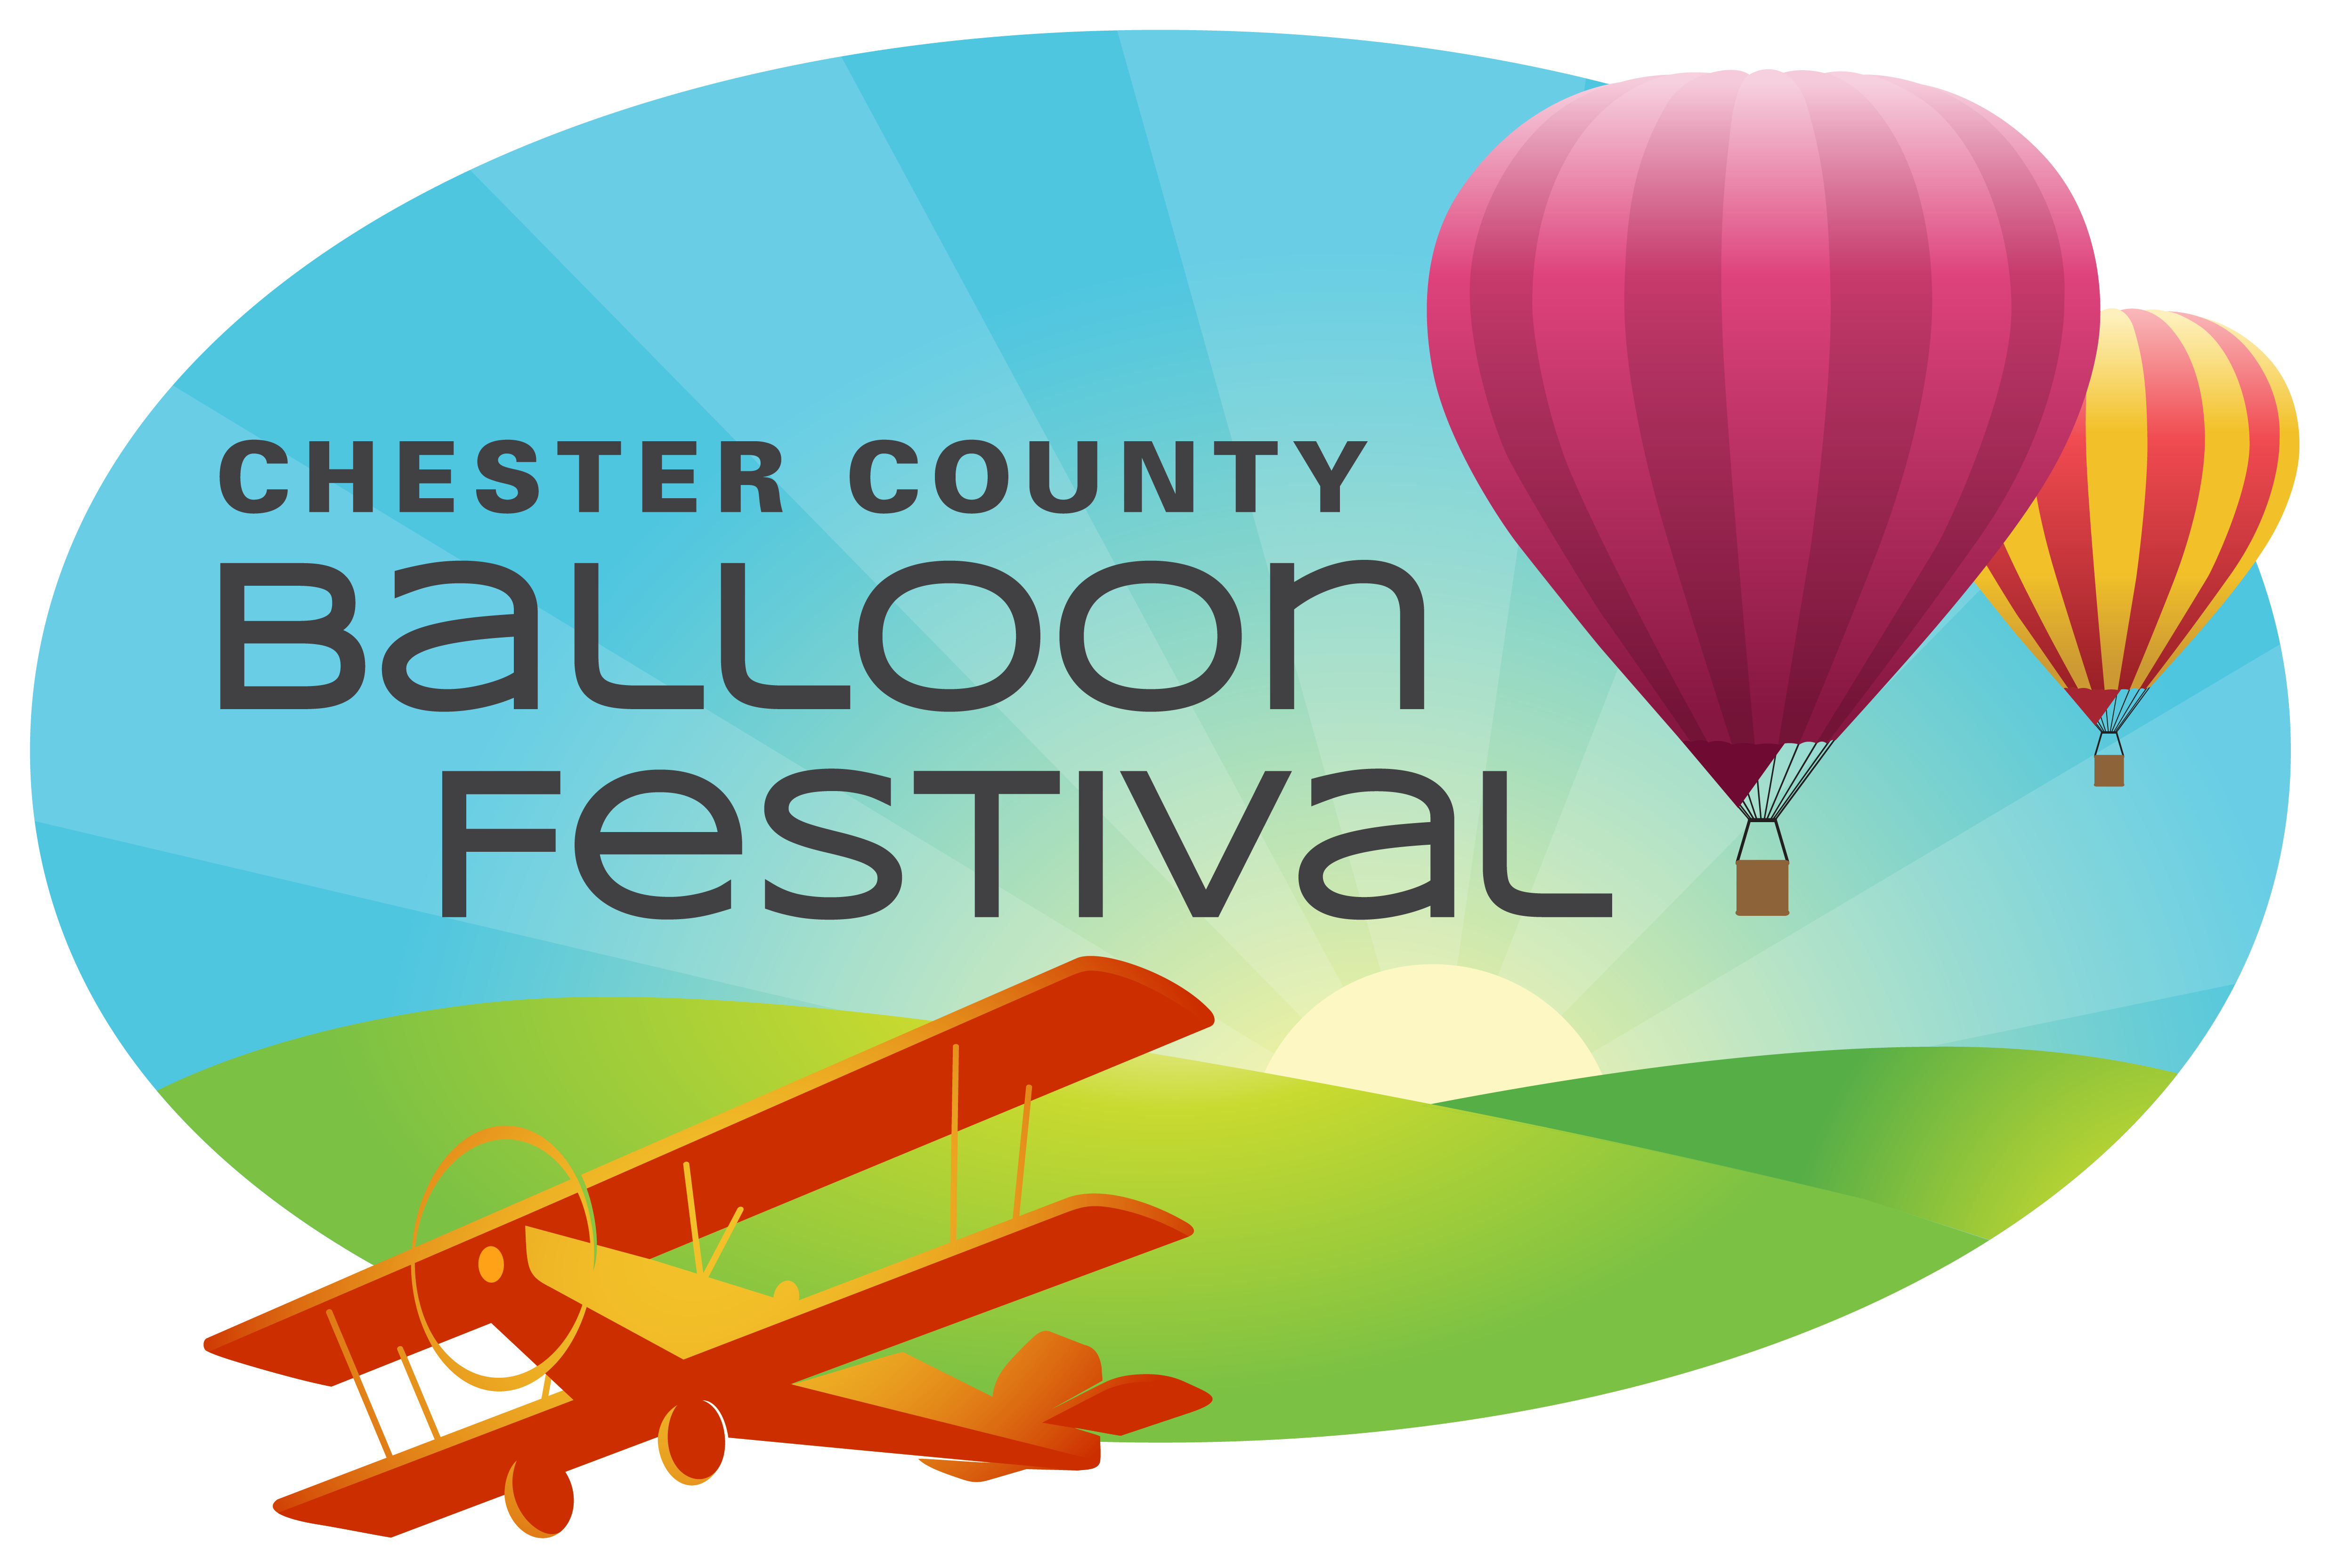 Chester County Balloon Festival Logo - Chester County Balloon Festival (5367x4017), Png Download